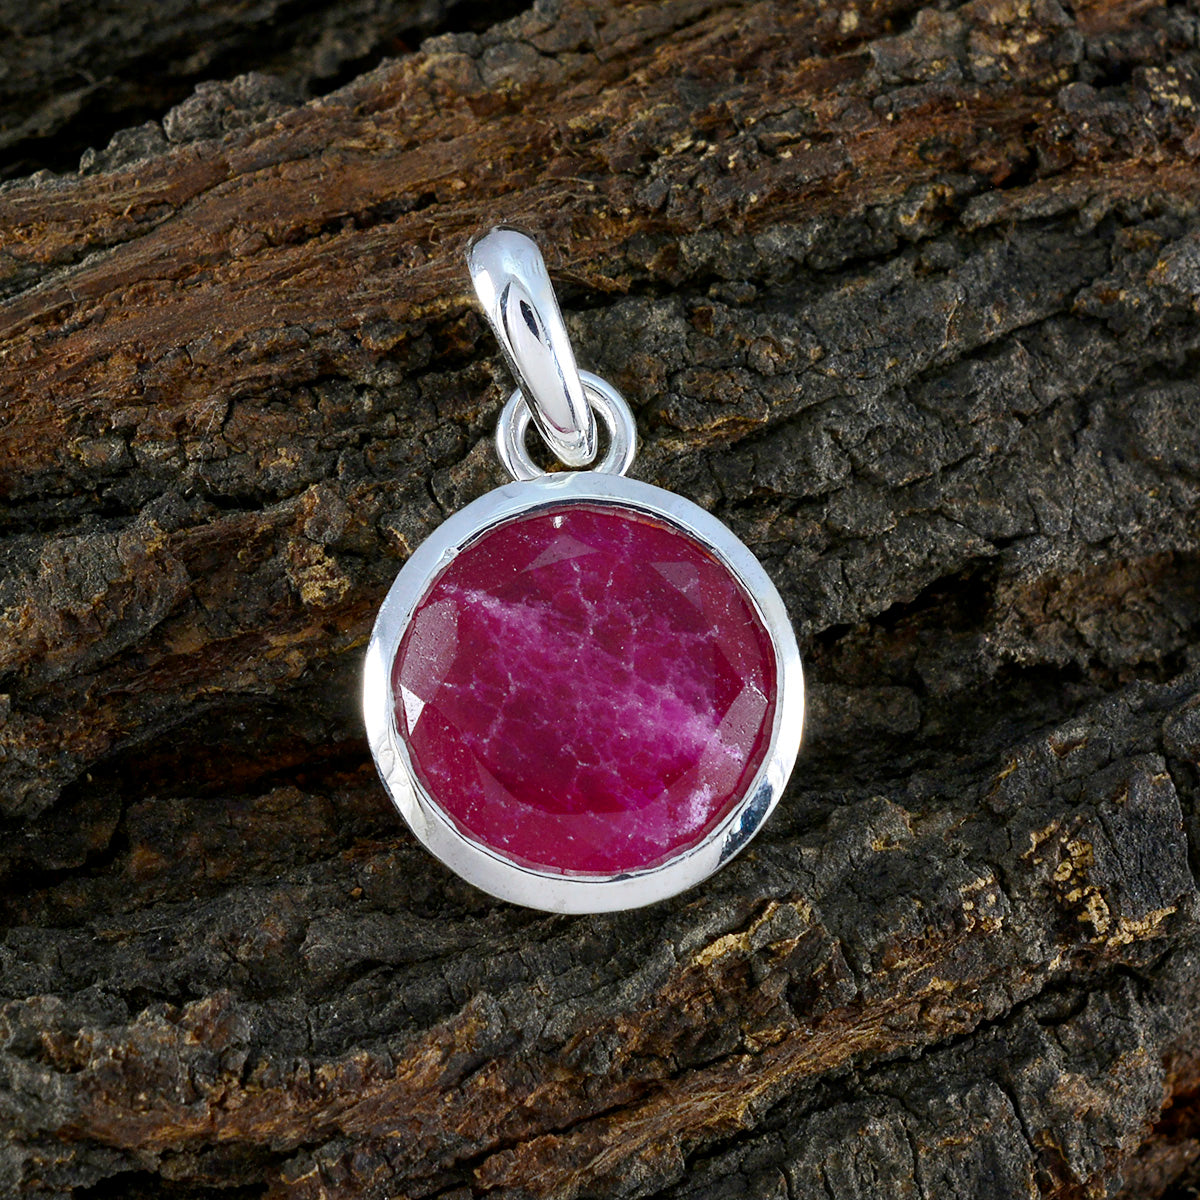 riyo горячий драгоценный камень круглый граненый красный индийский рубин стерлингового серебра кулон подарок для ручной работы